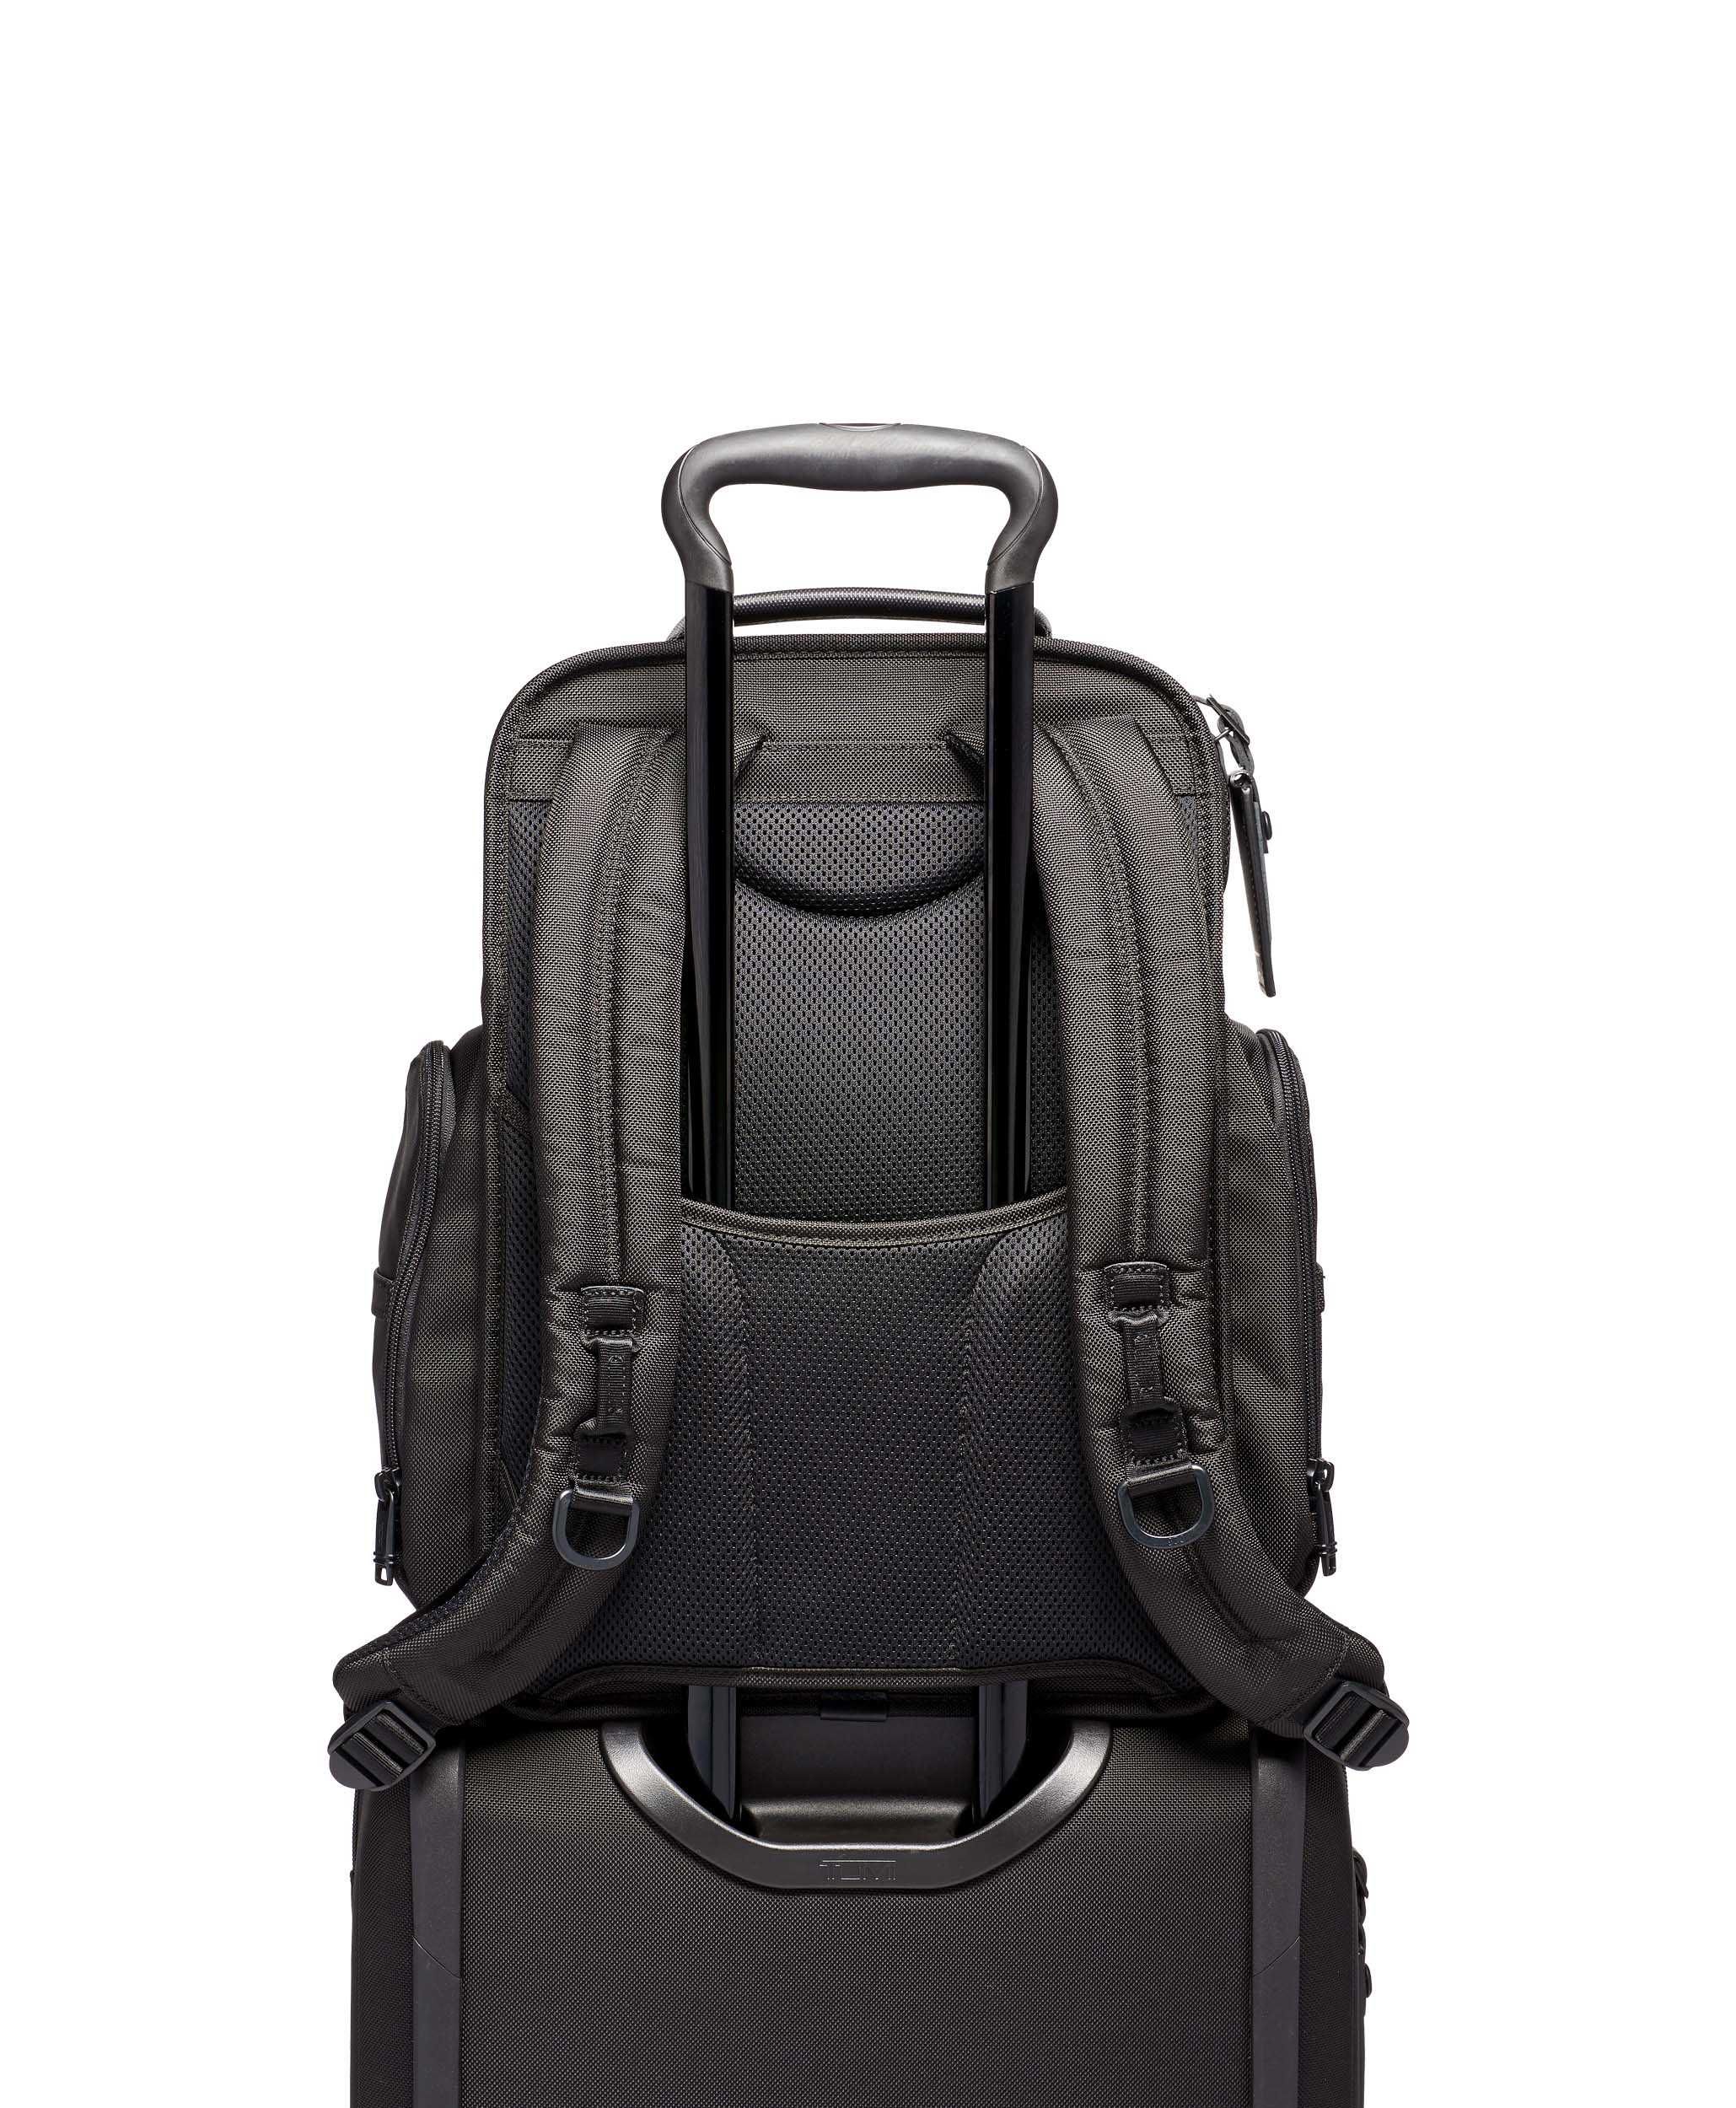 Рюкзак Tumi Alpha 3 Backpack! Новый с бирками! Оригинал!